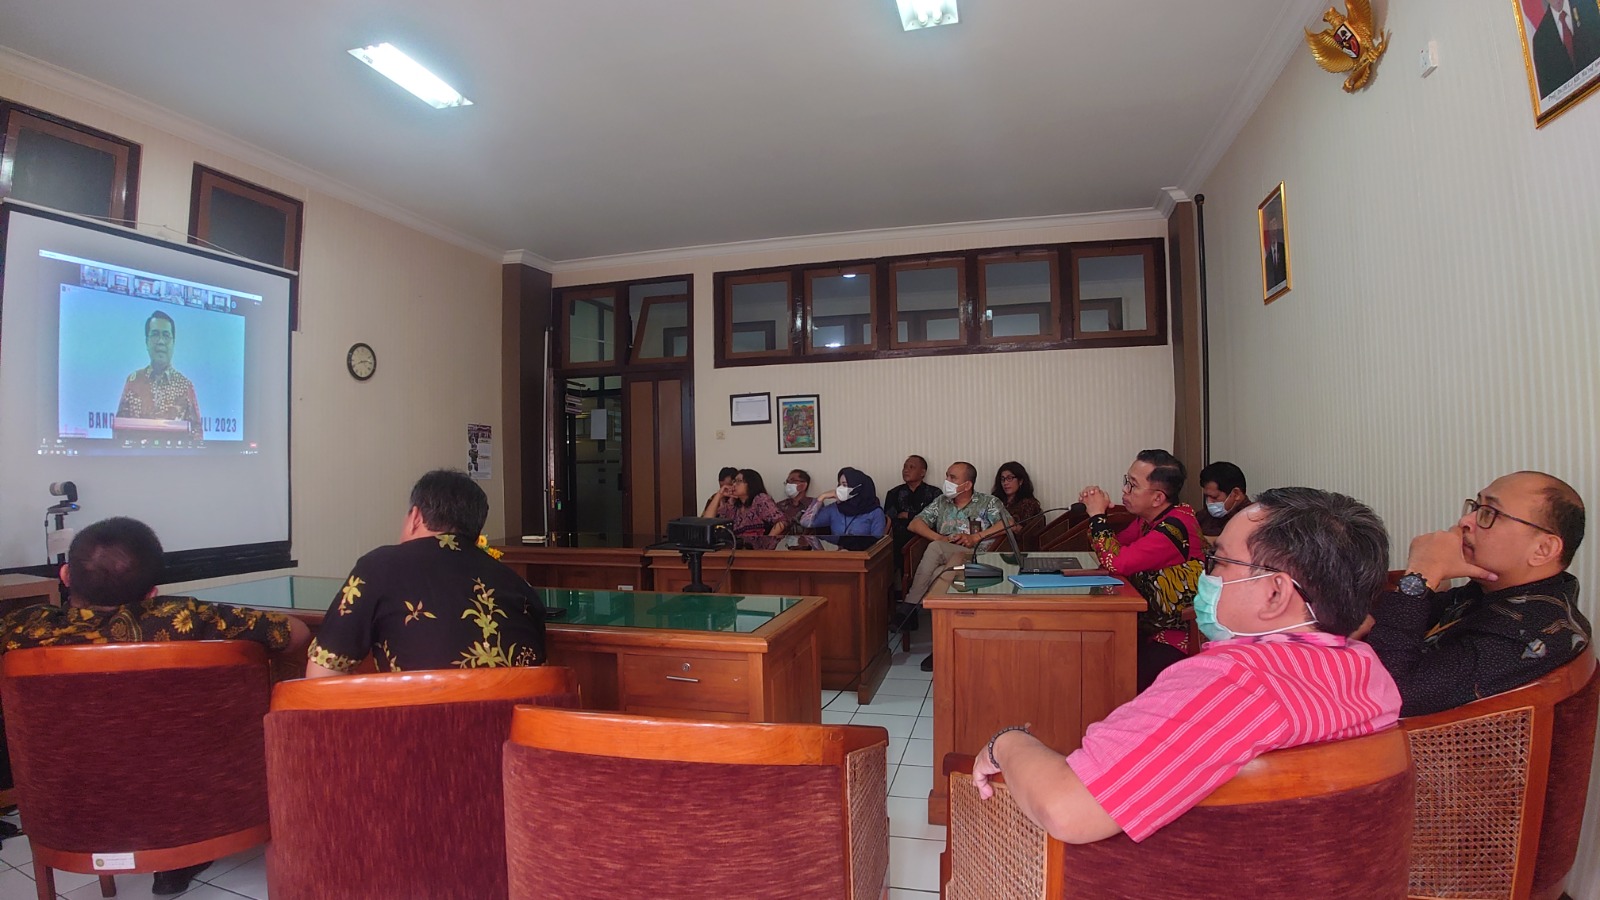 Pengadilan Negeri Yogyakarta Mengikuti Kegiatan Penguatan Implementasi Nota Kesepahaman dan Perjanjian Kerja Sama Mahkamah Agung RI dengan PT POS Indonesia